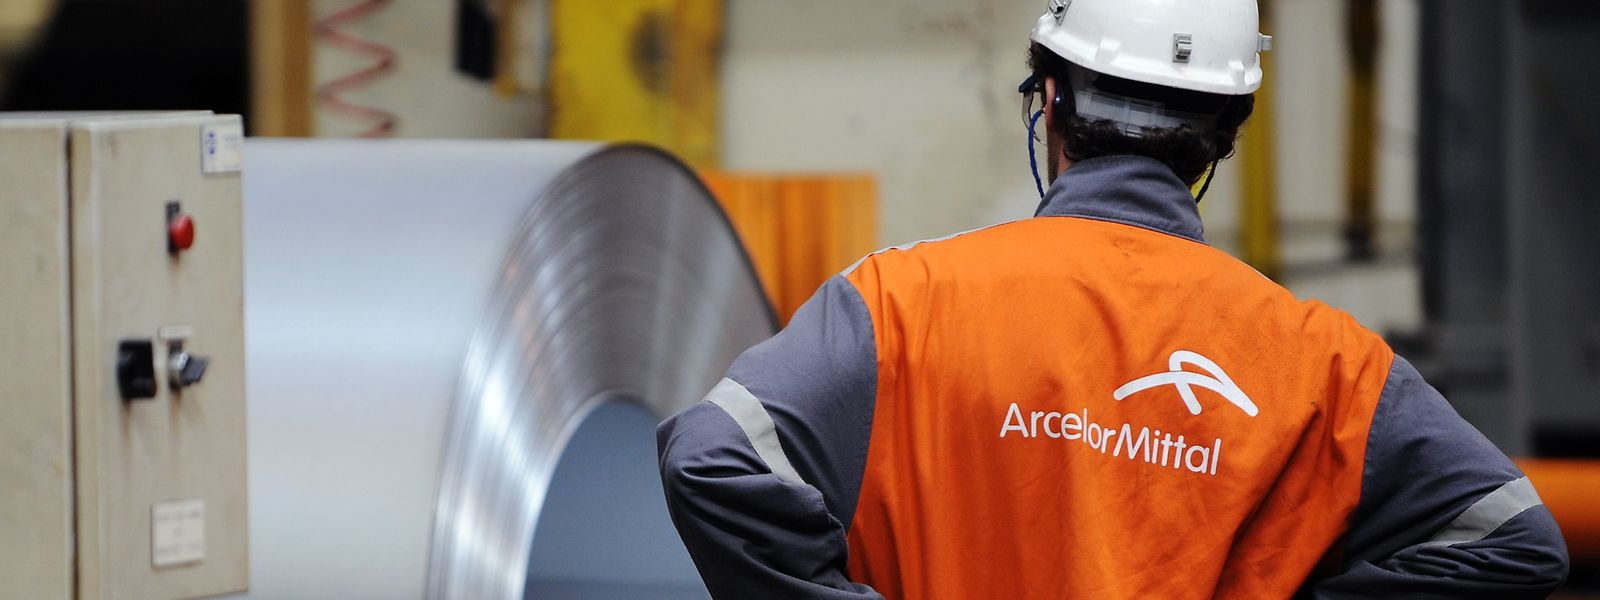  Ce jeudi, ArcelorMittal a annoncé pour son troisième trimestre une chute des bénéfices.